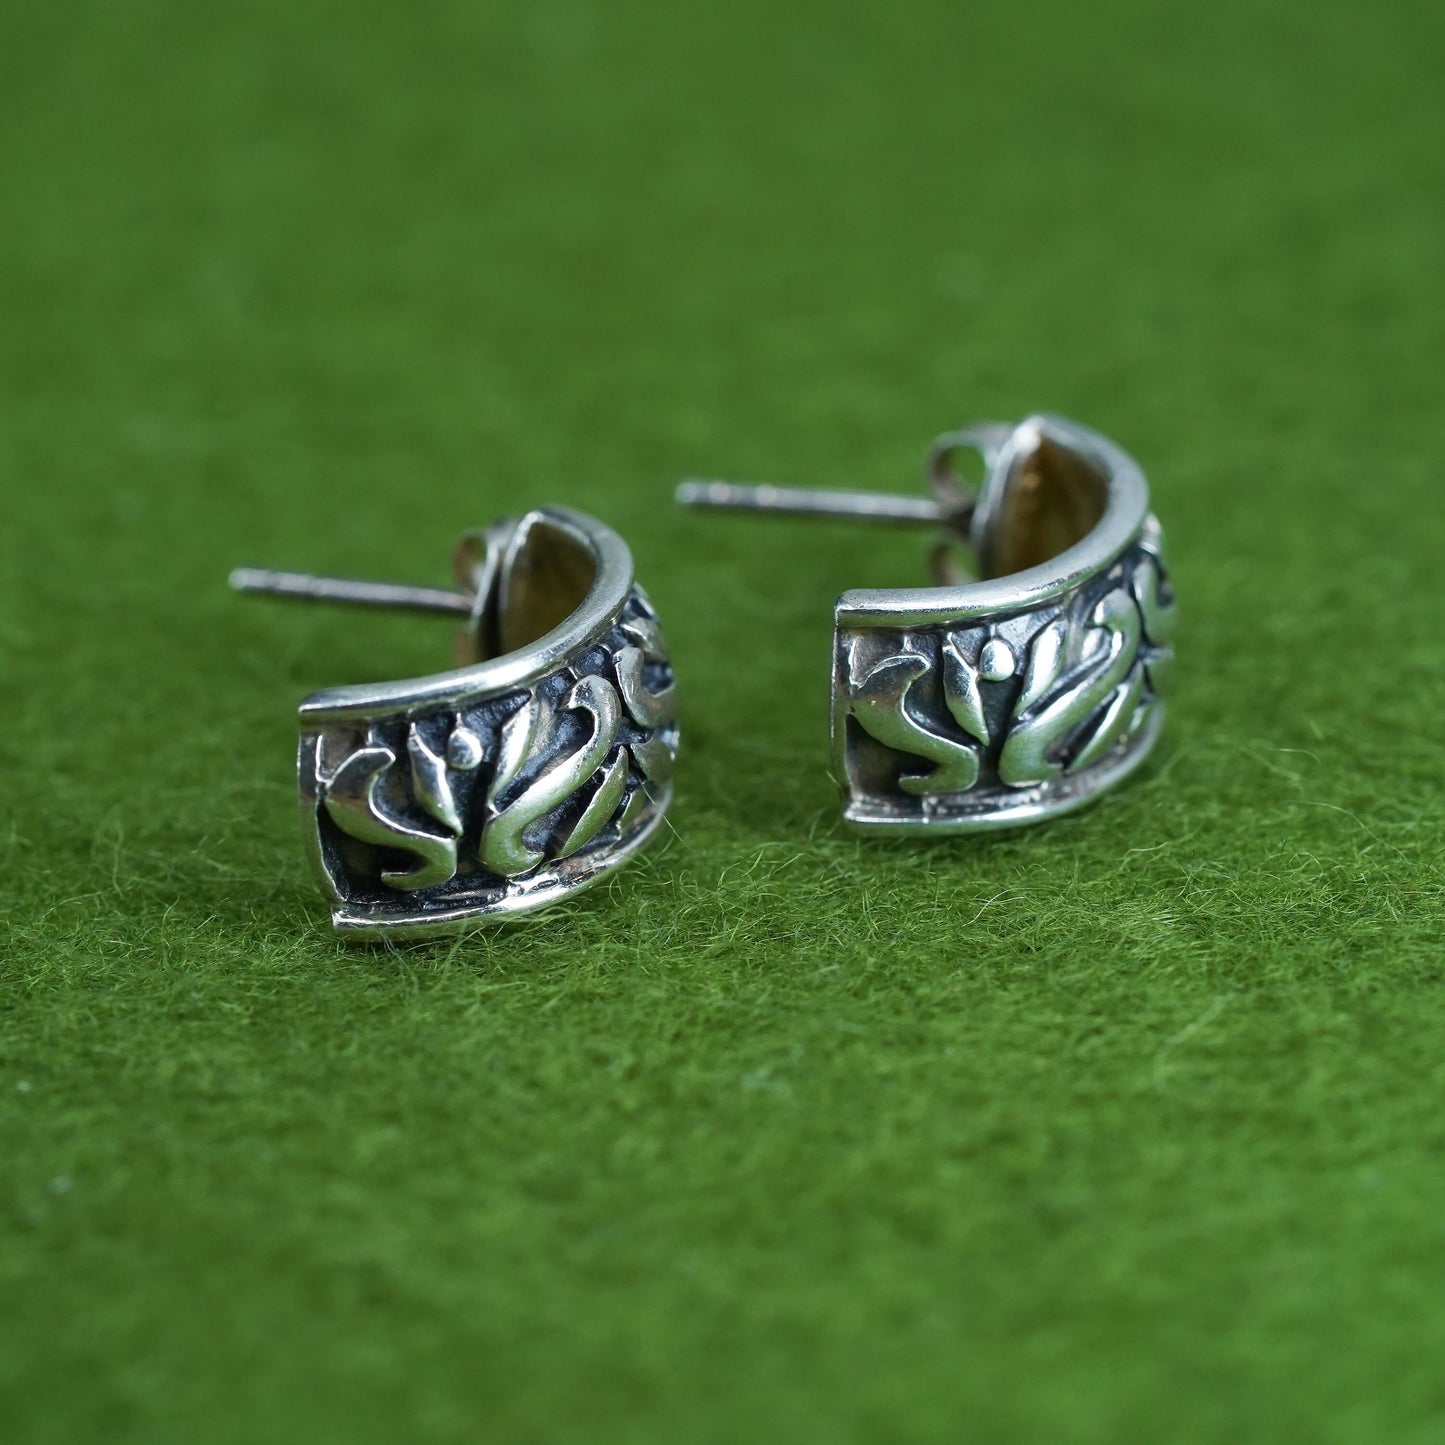 0.5", Vintage sterling silver wide hoops, textured 925 huggie earrings